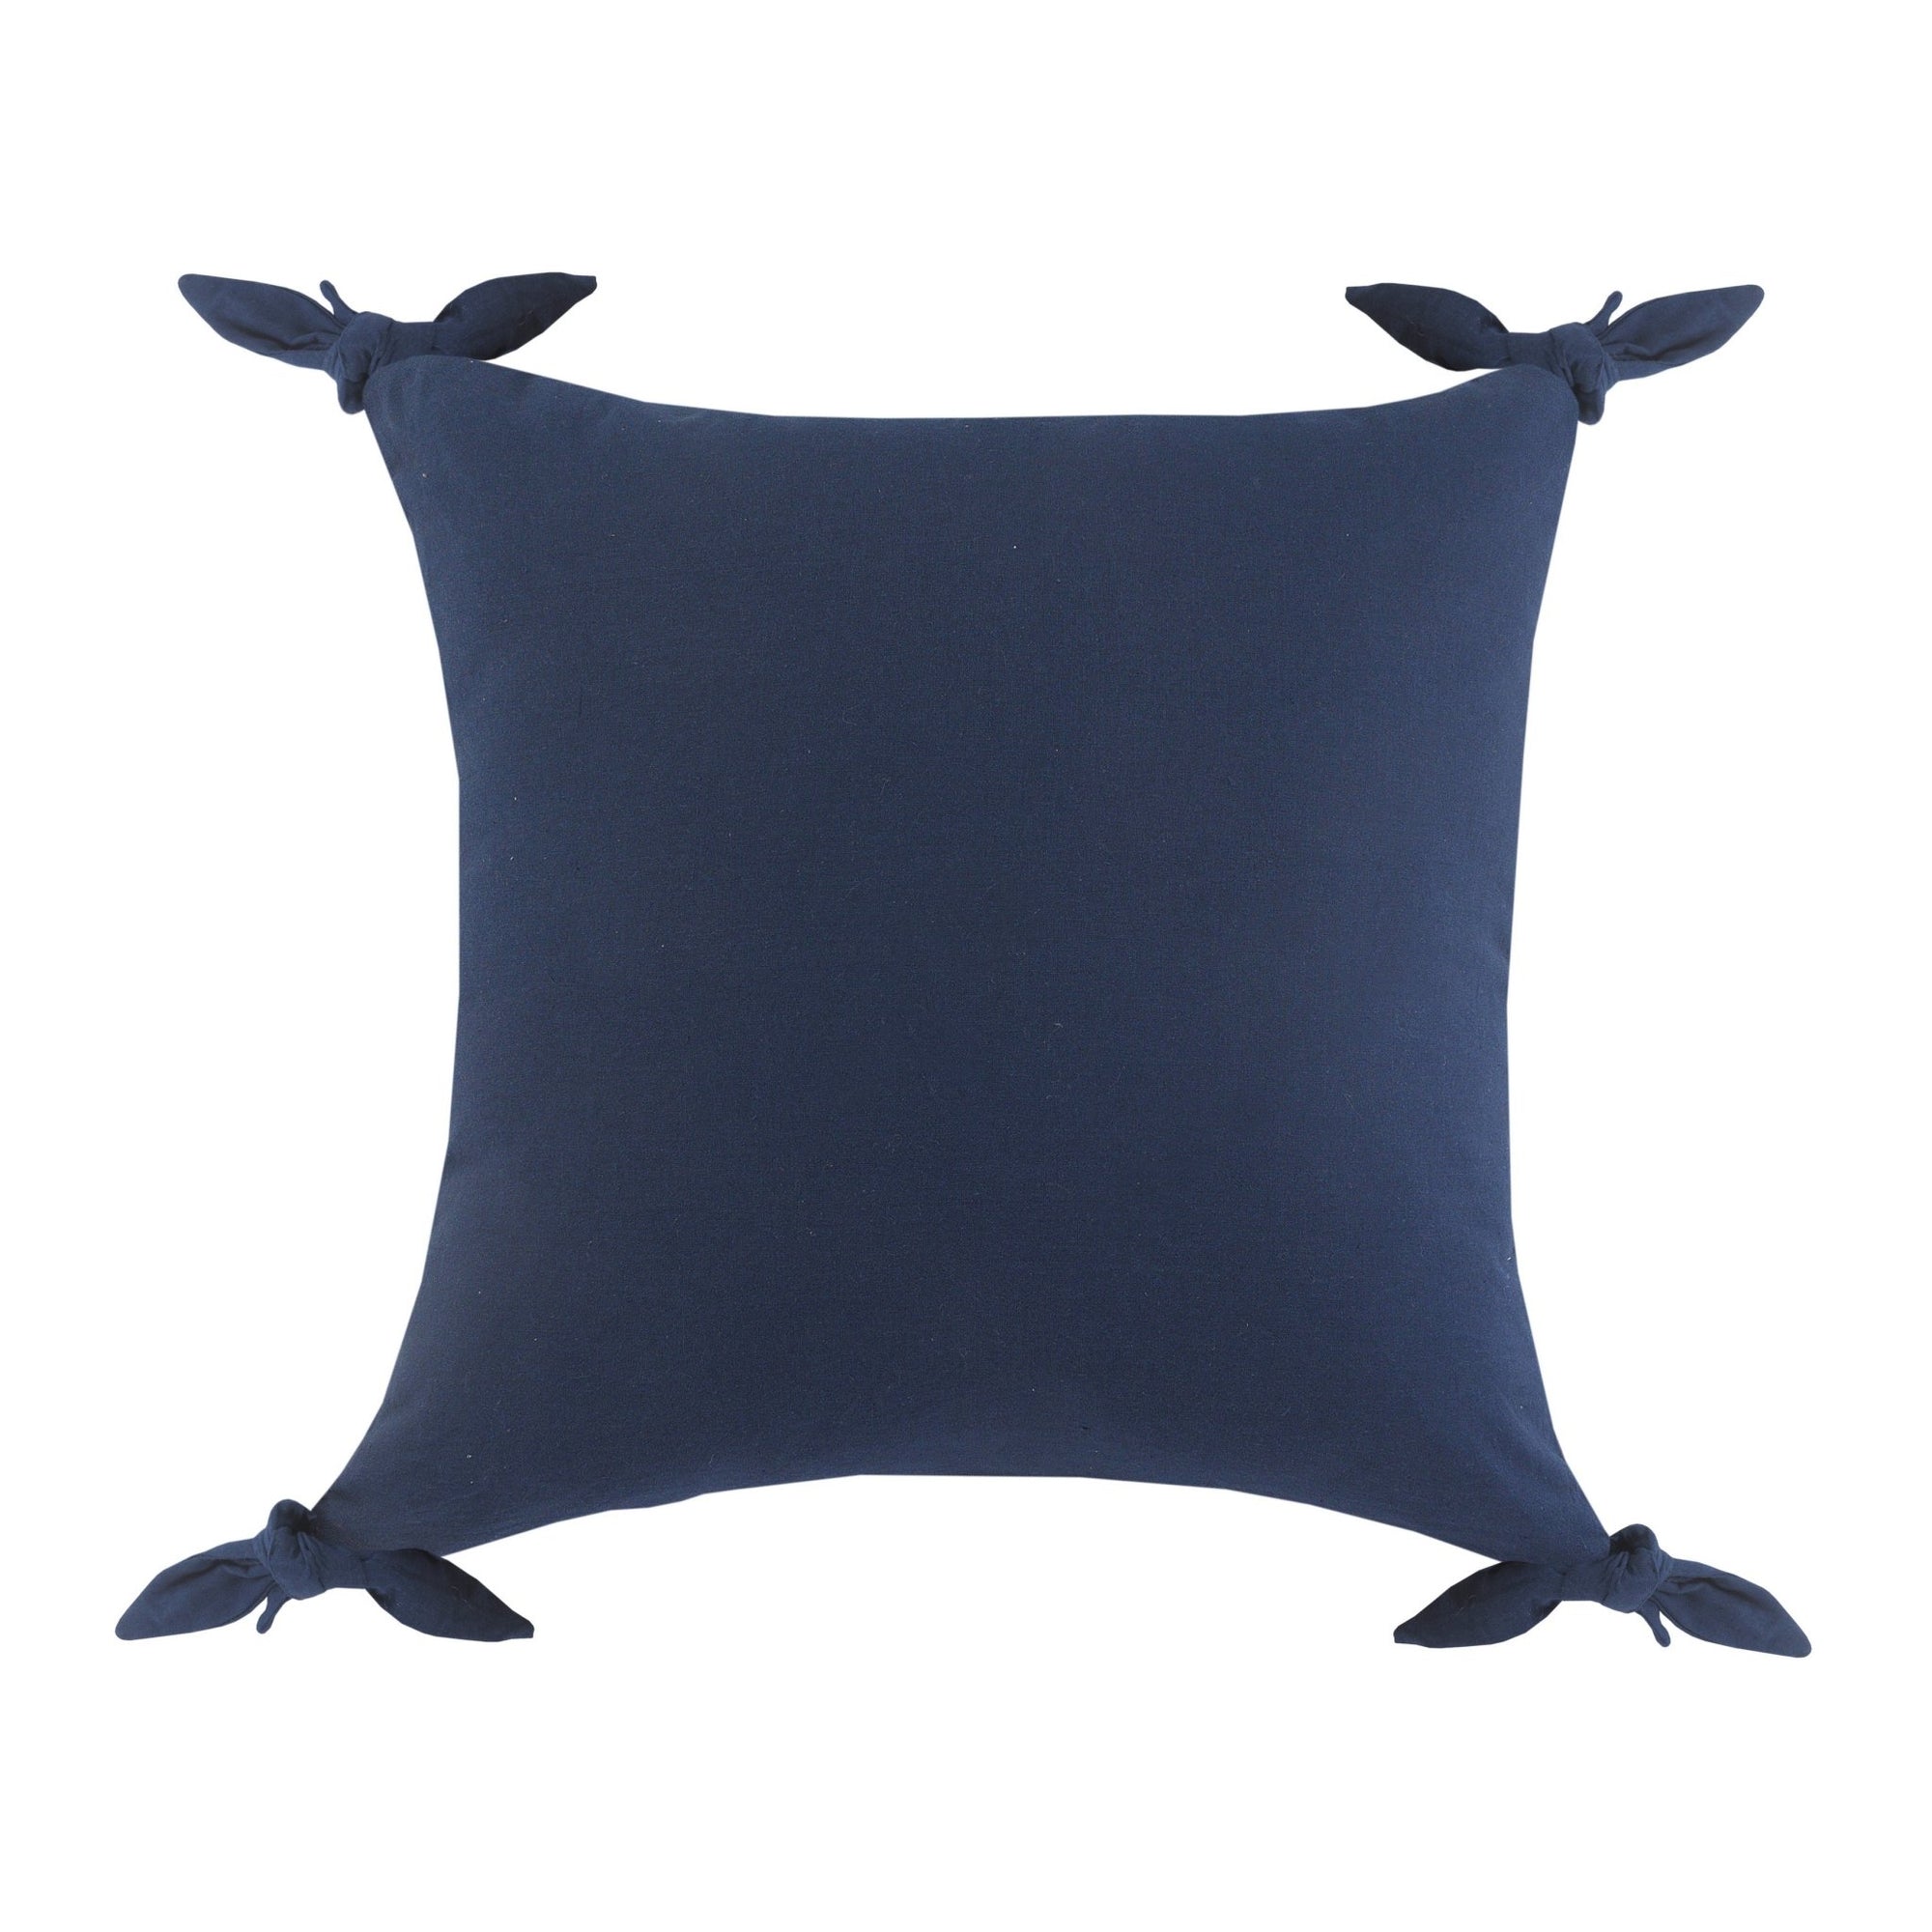 Aisha Lr07683 Ensign Blue Pillow - Rug & Home